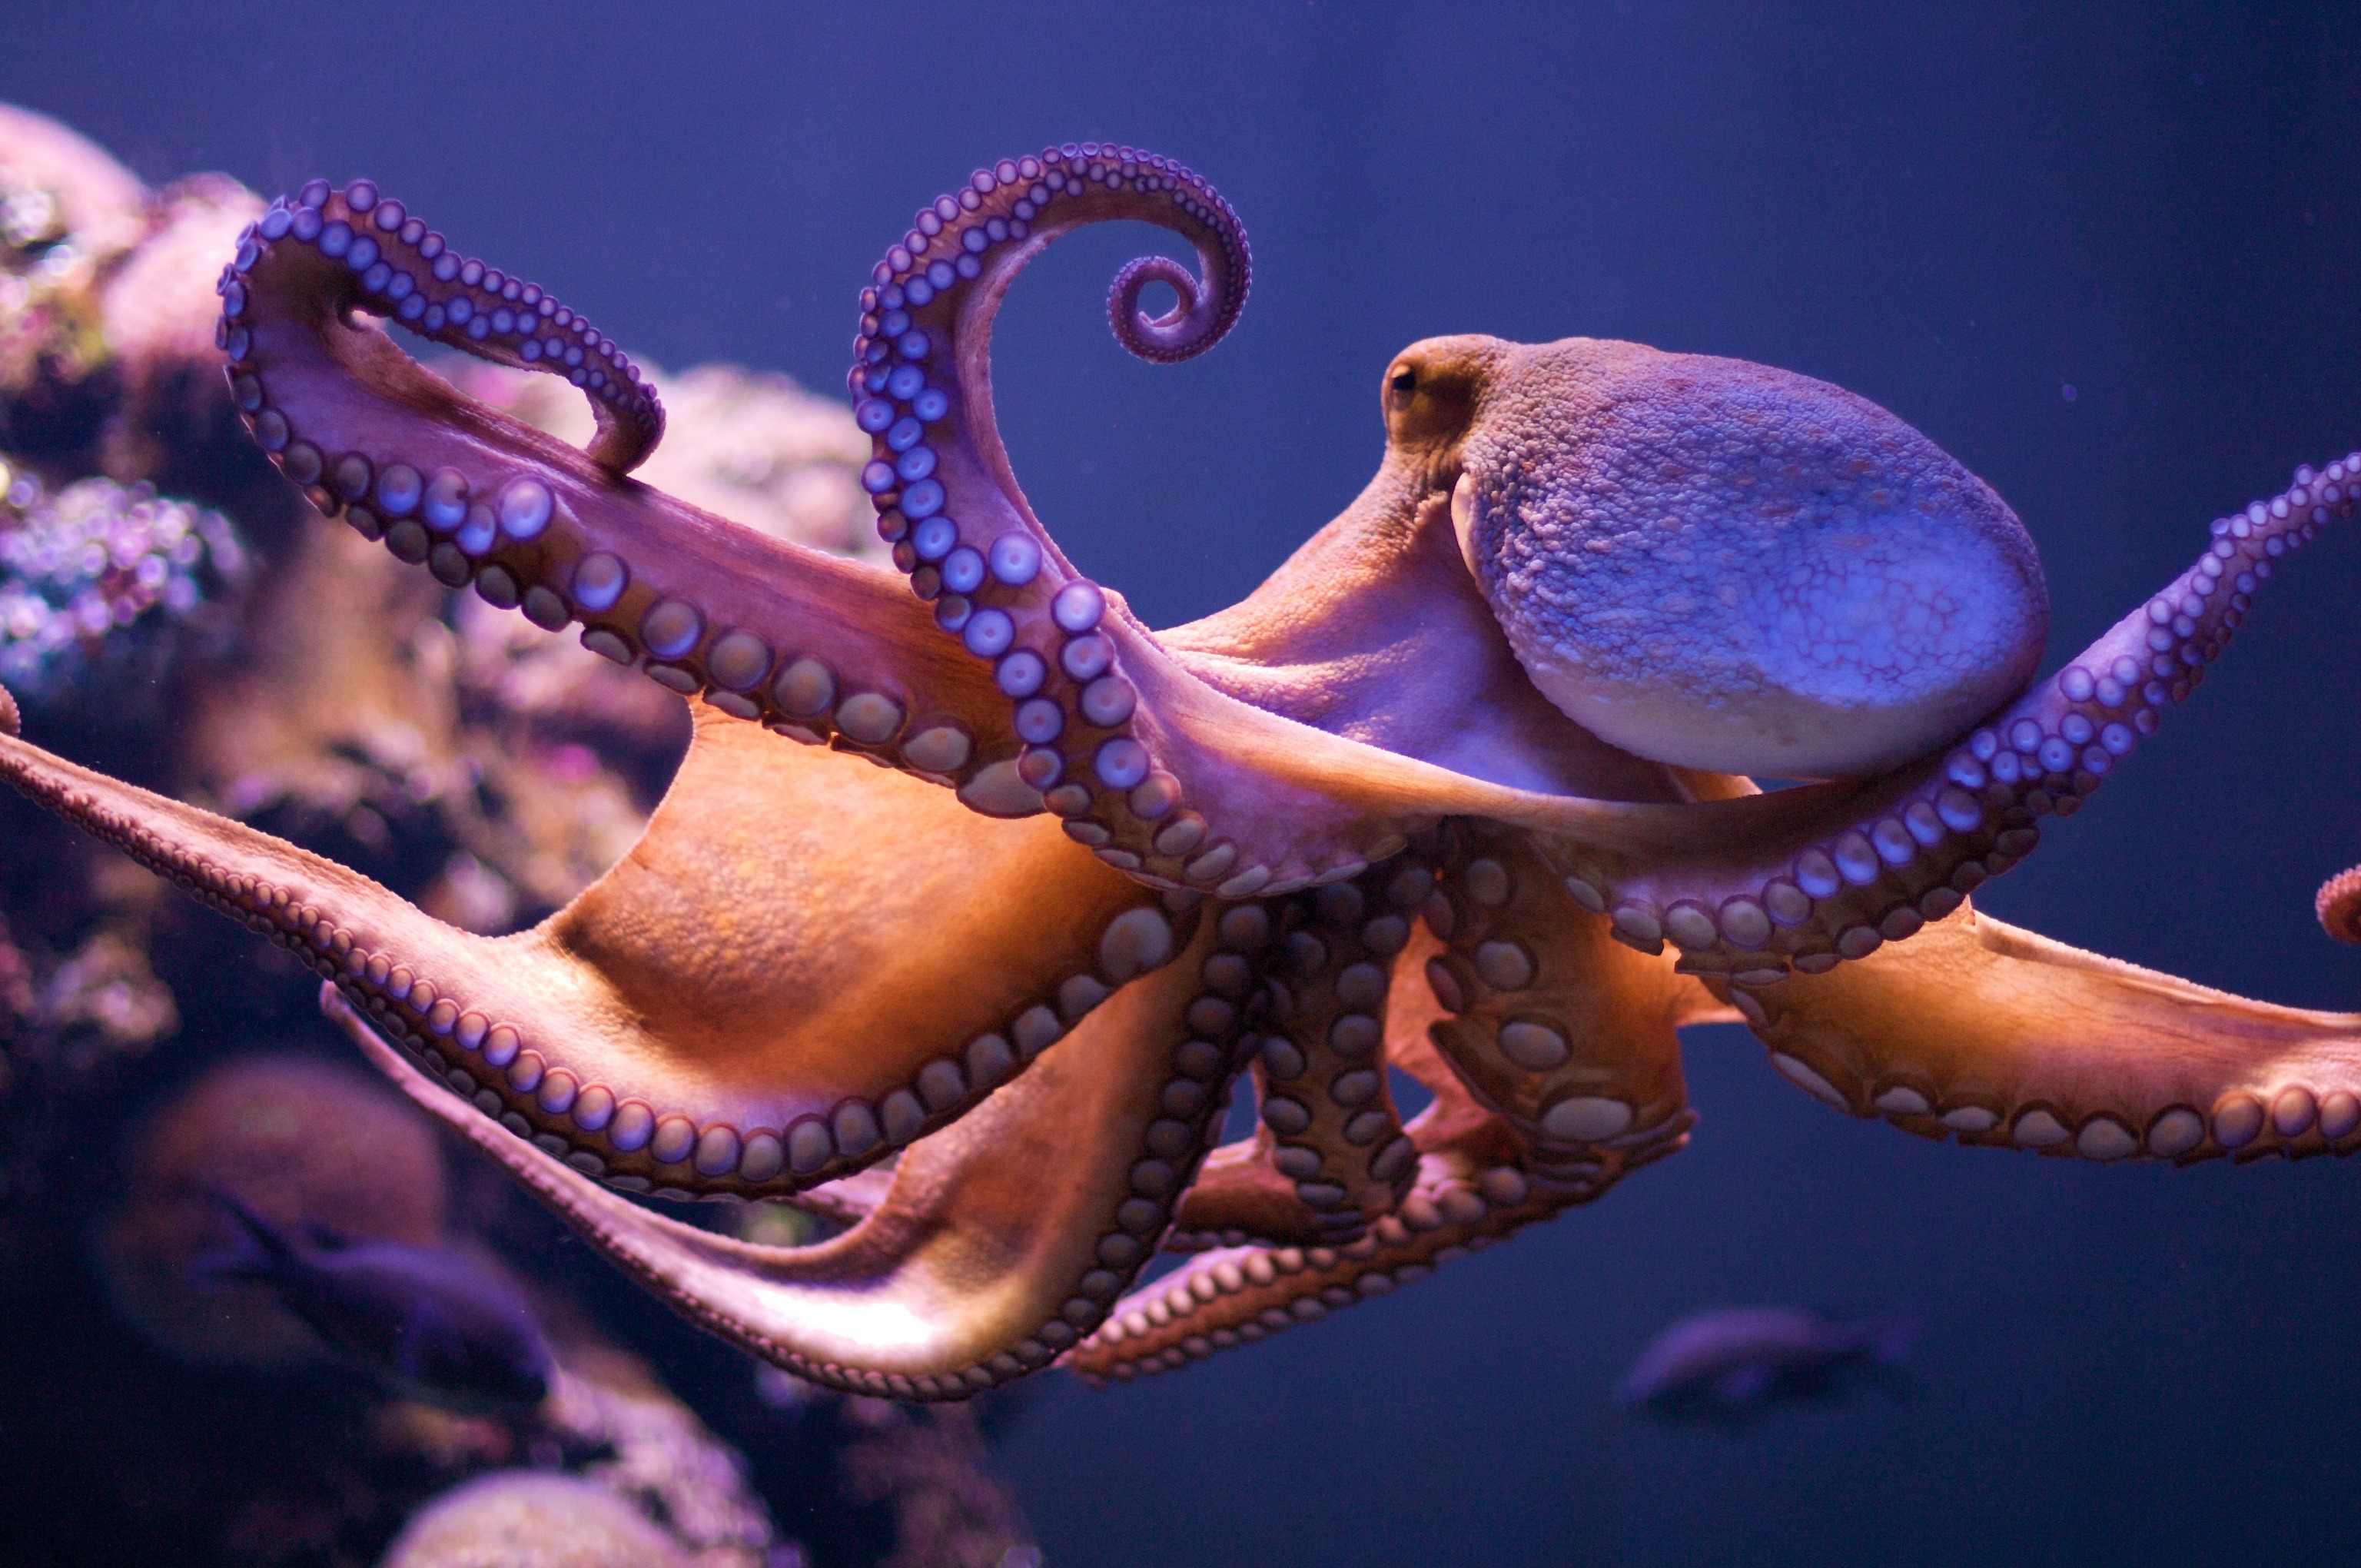 Voisins des seiches et des calmars, des céphalopodes qui ont dix bras, les&nbsp;octopodes en ont huit. Ces as du camouflage, capables de se faufiler dans les fonds rocheux, sont remarquablement intelligents.&nbsp;© Morten Brekkevold, Flickr, cc by nc sa 2.0